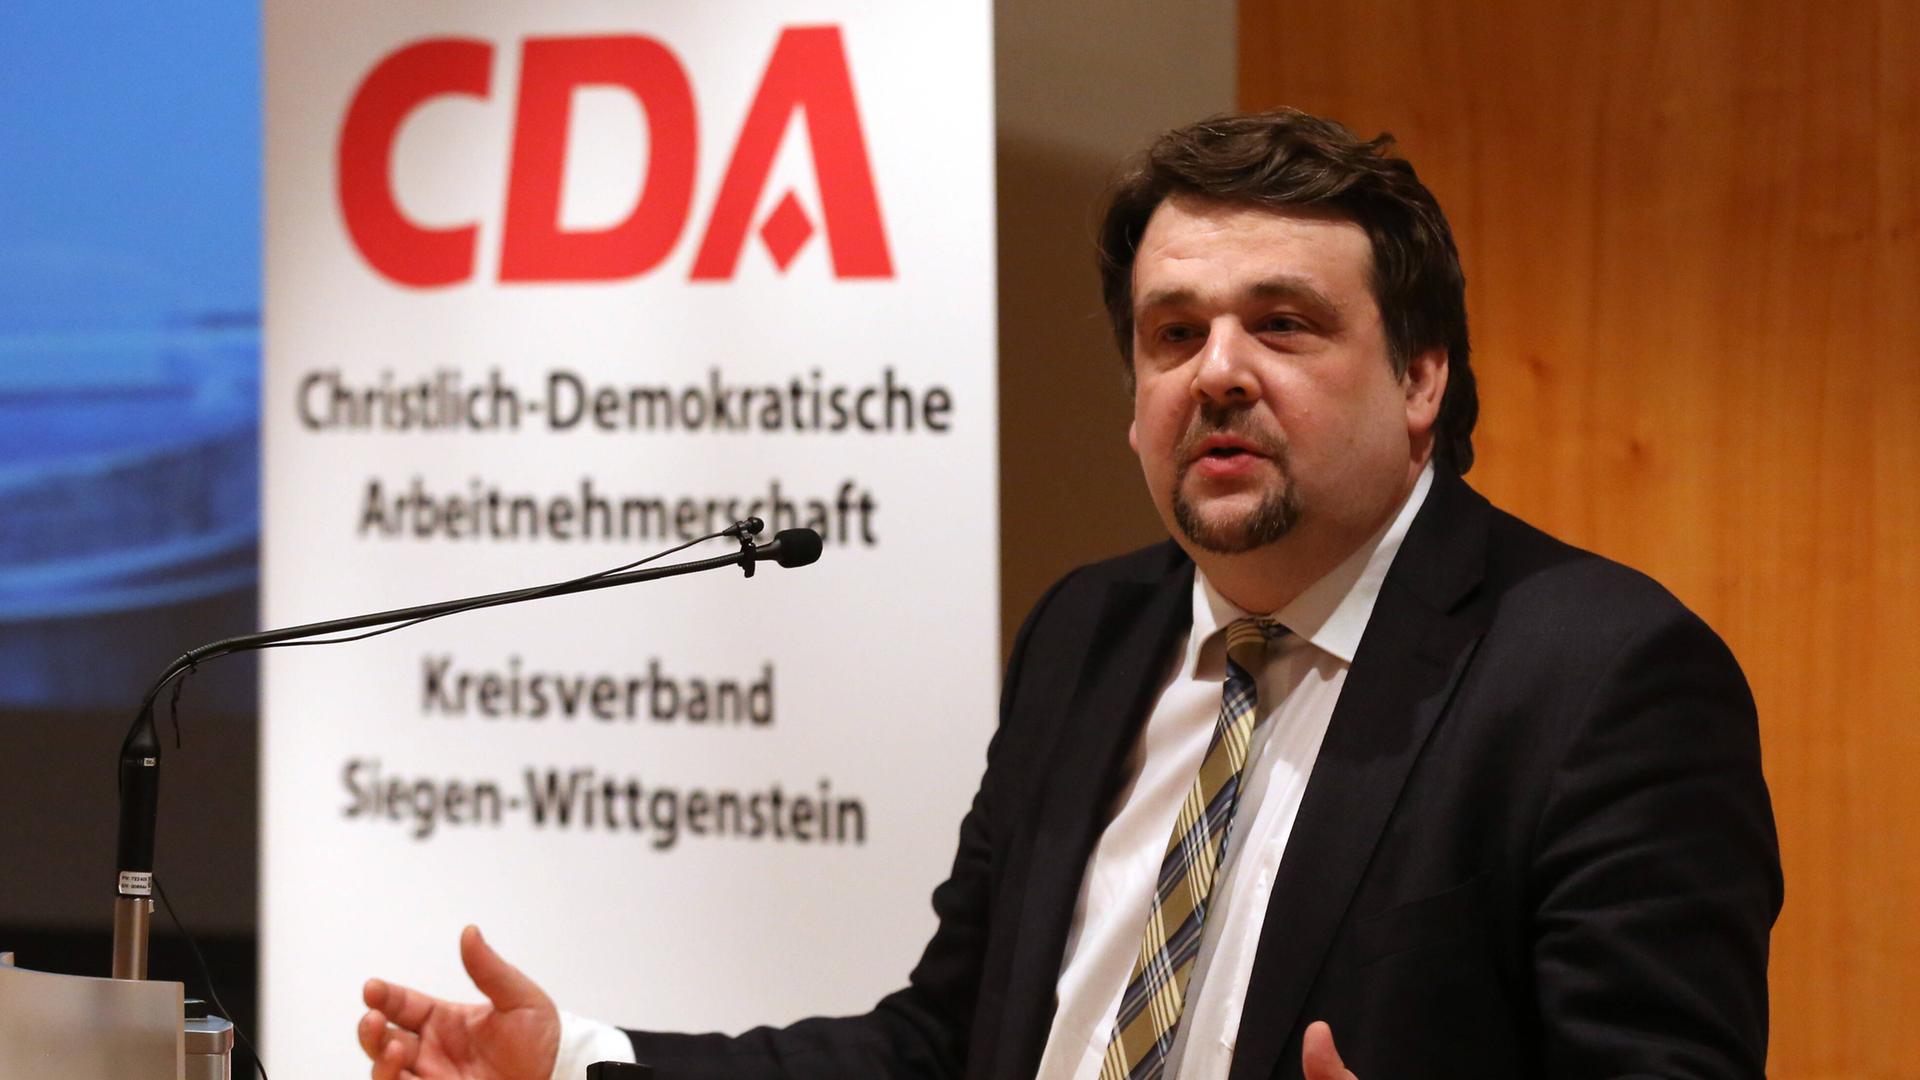 Dennis Radtke am Rednerpult. Im Hintergrund hängt der Schriftzug: "CDA - Christlich-demokratische Arbeitnehmerschaft - Kreisverband Siegen-Wittgenstein"